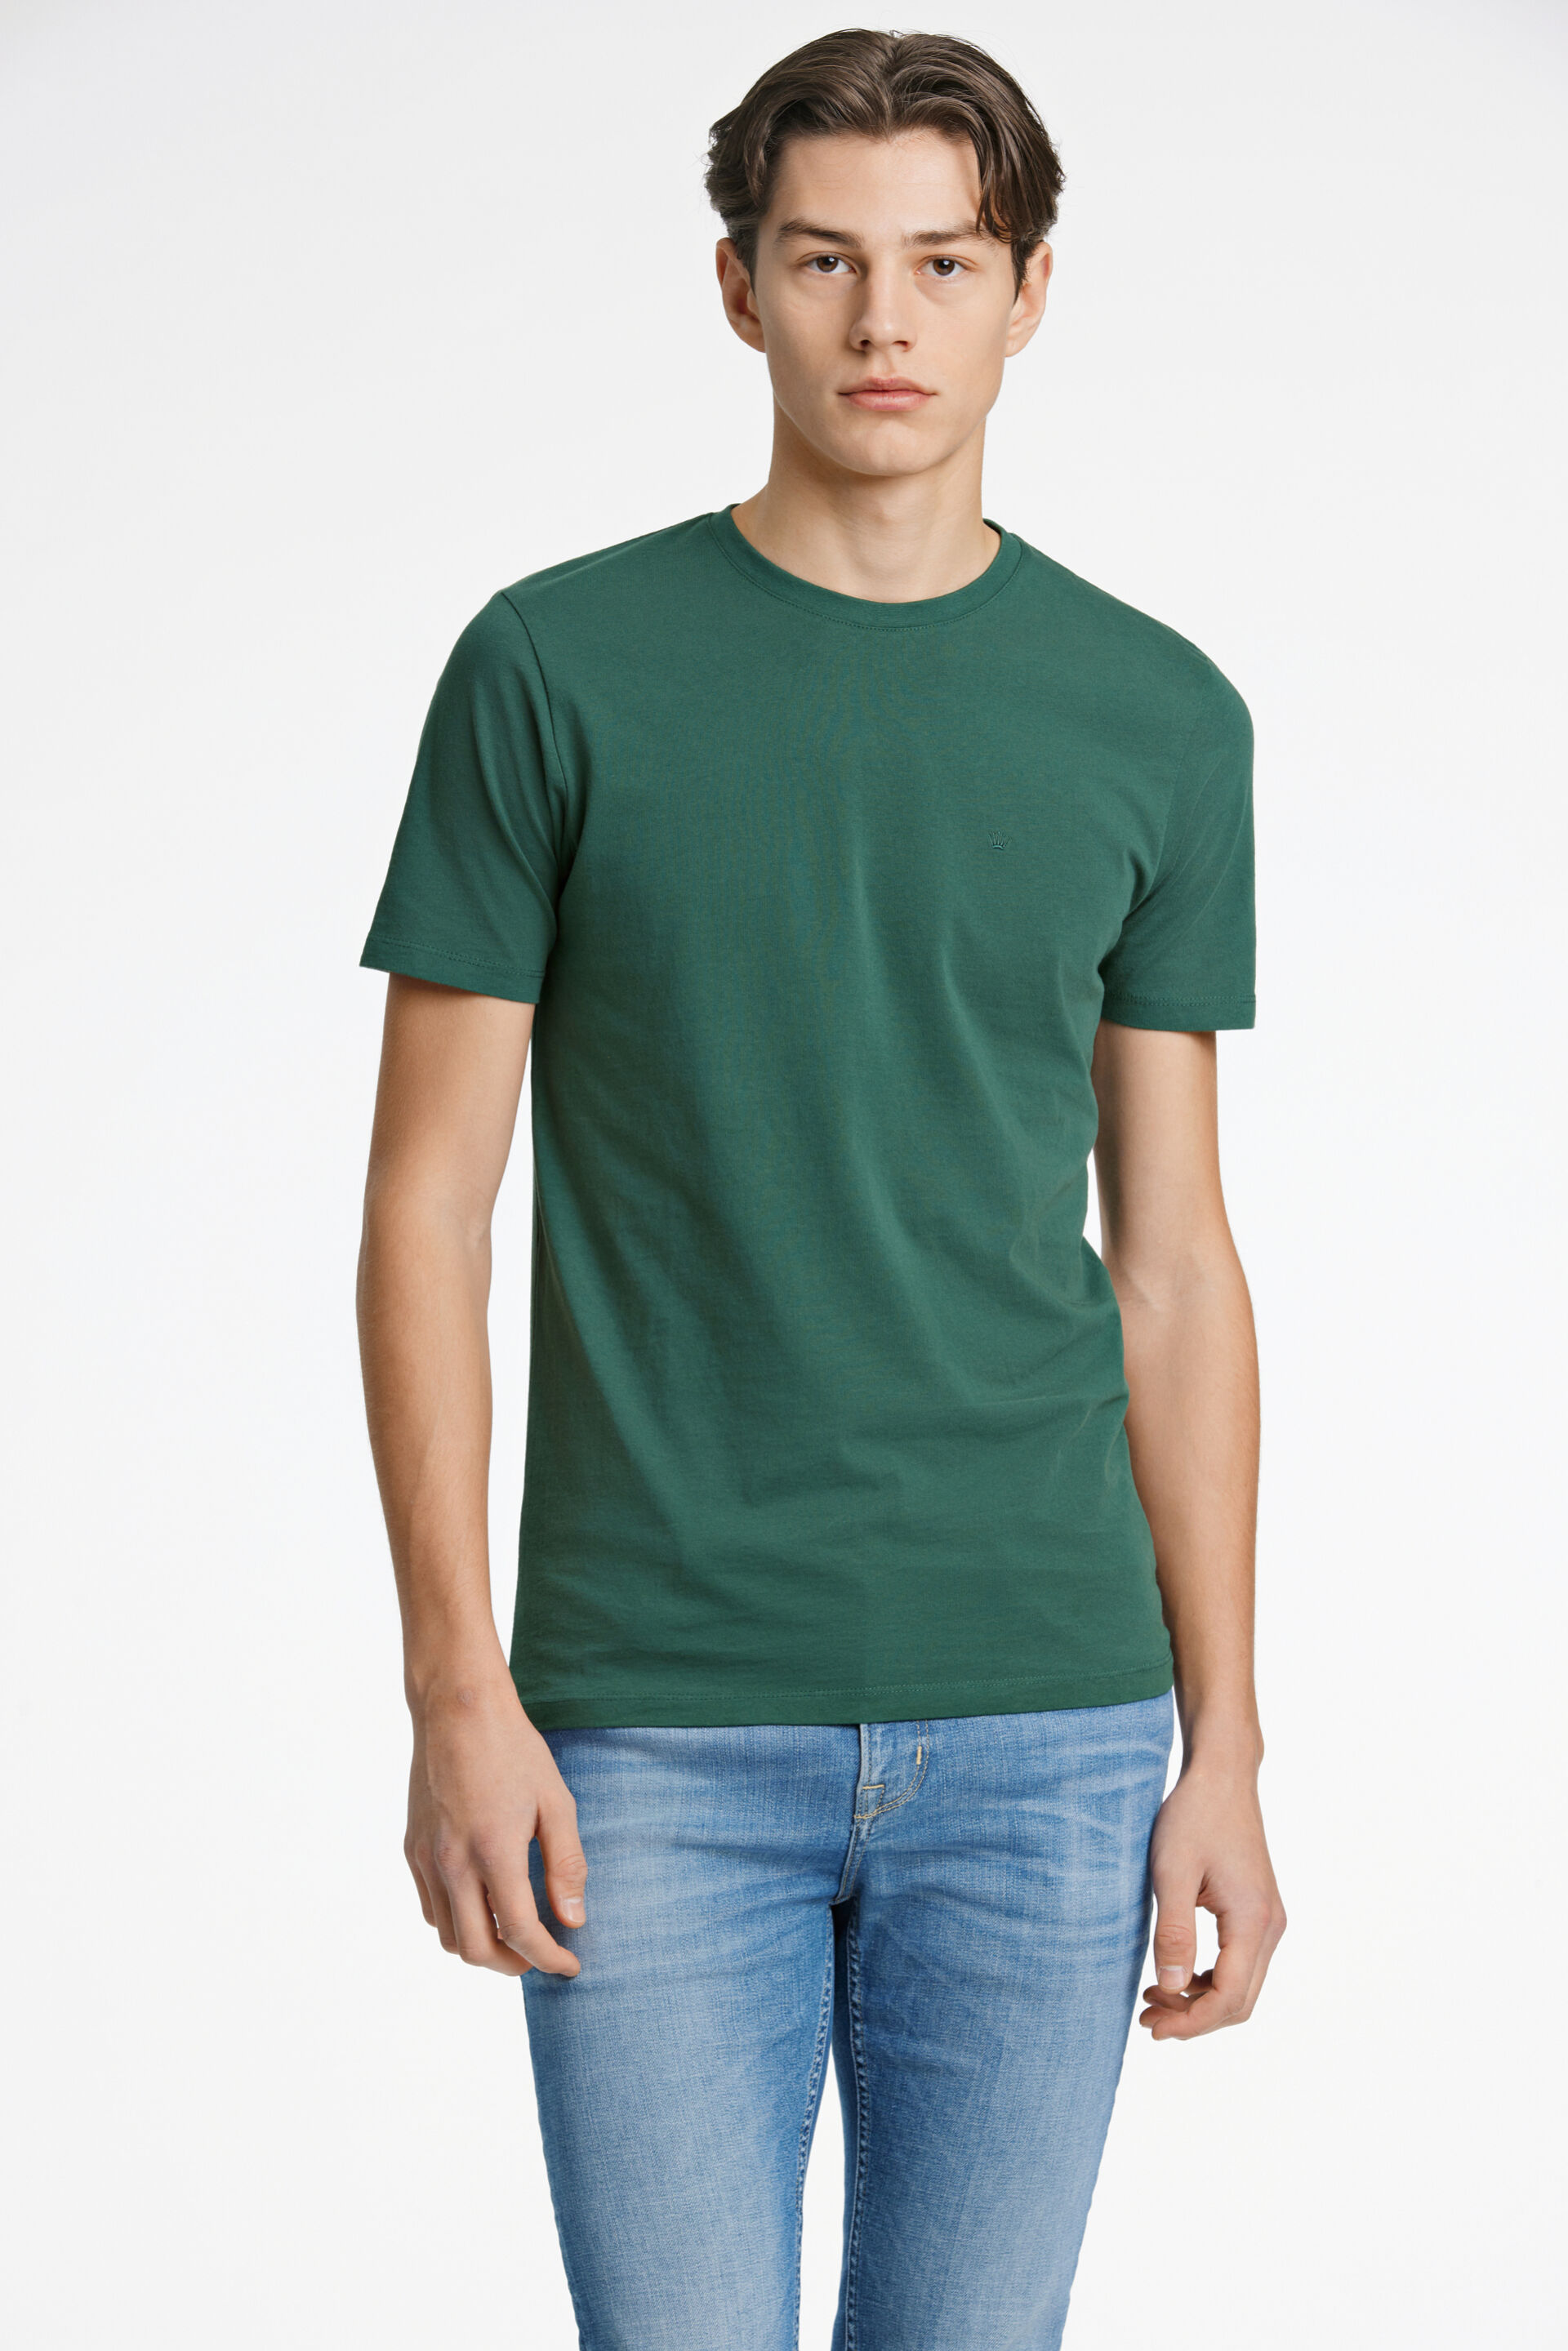 Junk de Luxe  T-shirt Grøn 60-40005